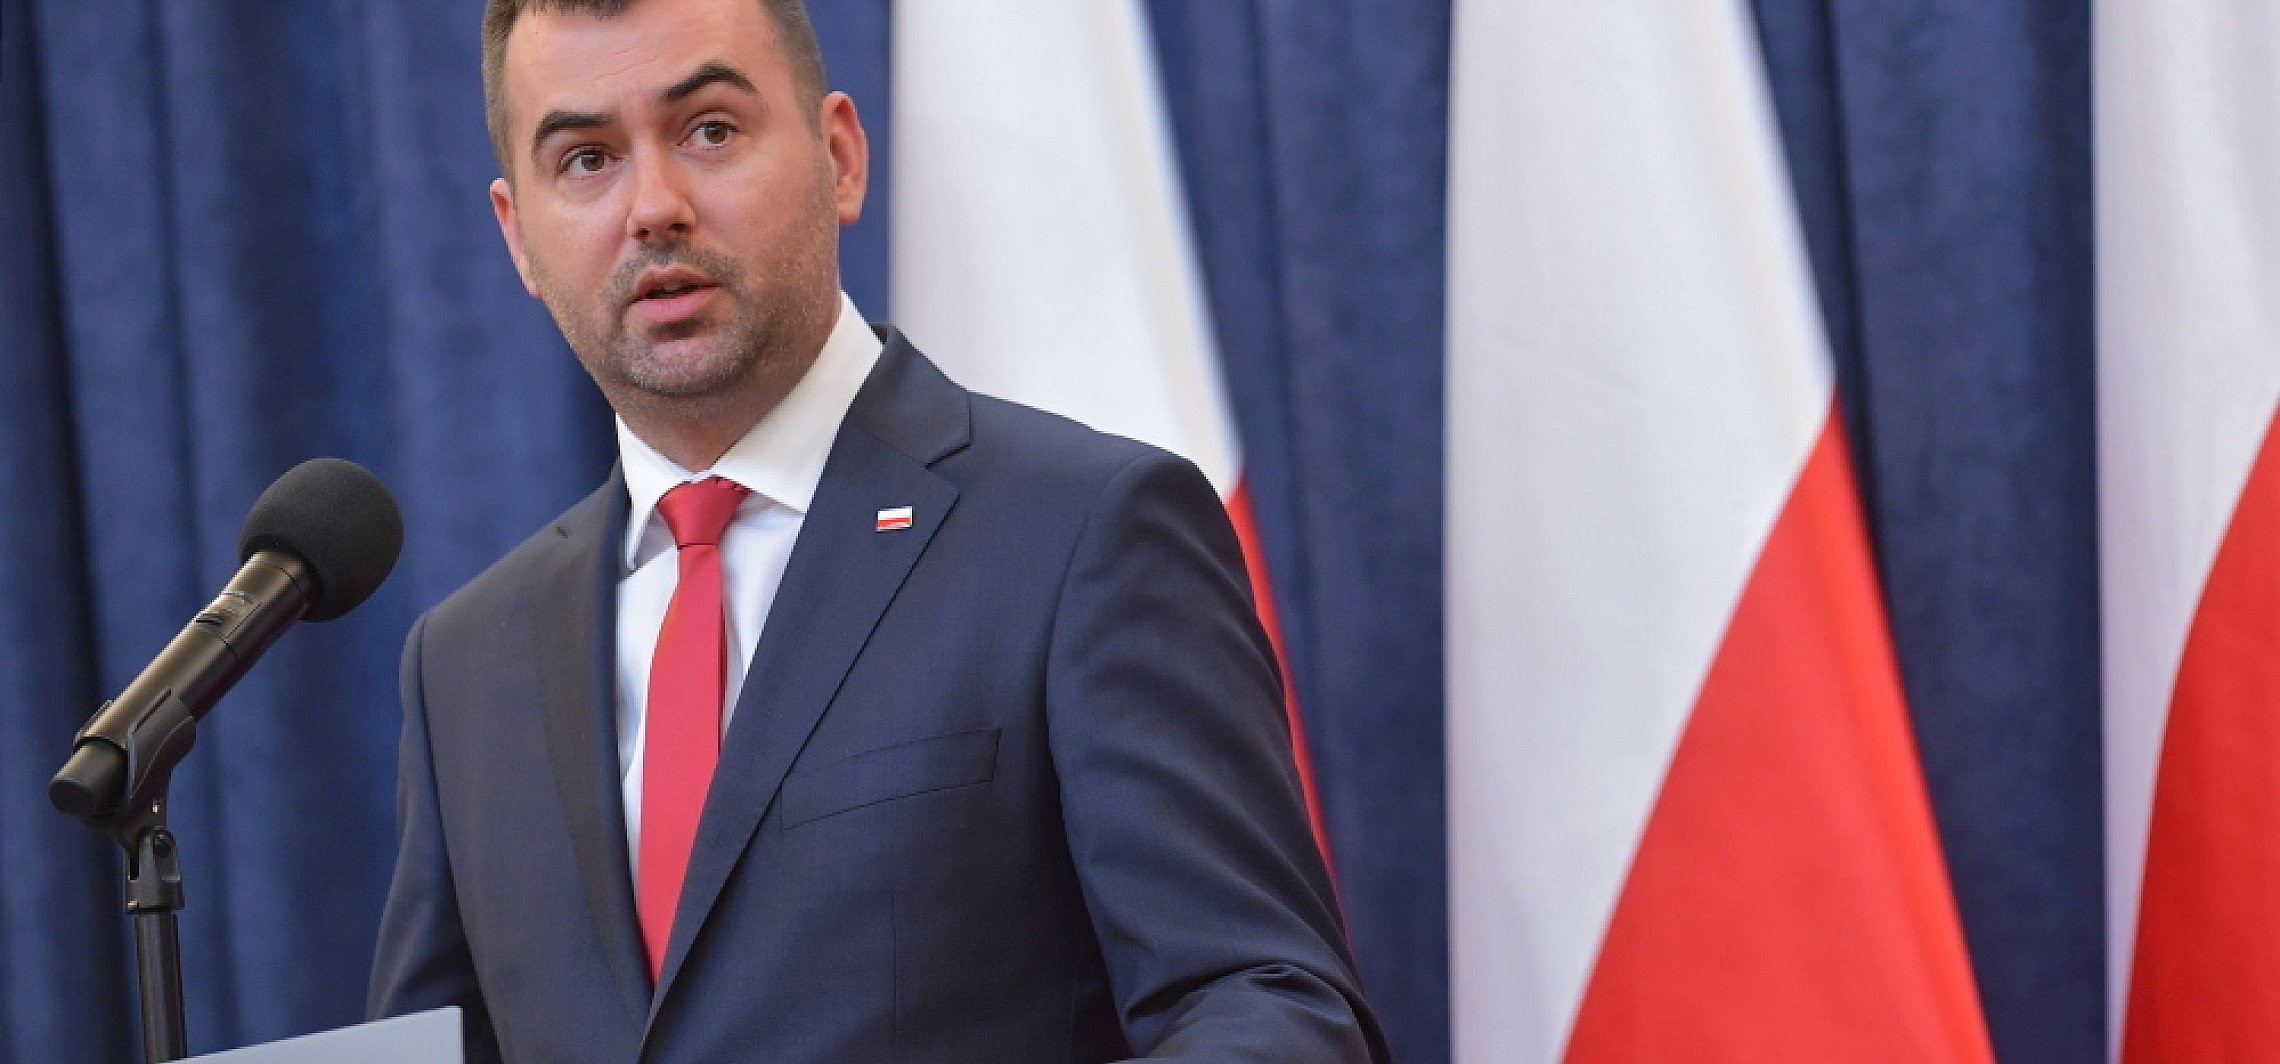 Kraj - W piątek o godz. 14.30 prezydent powoła nowy rząd Mateusza Morawieckiego